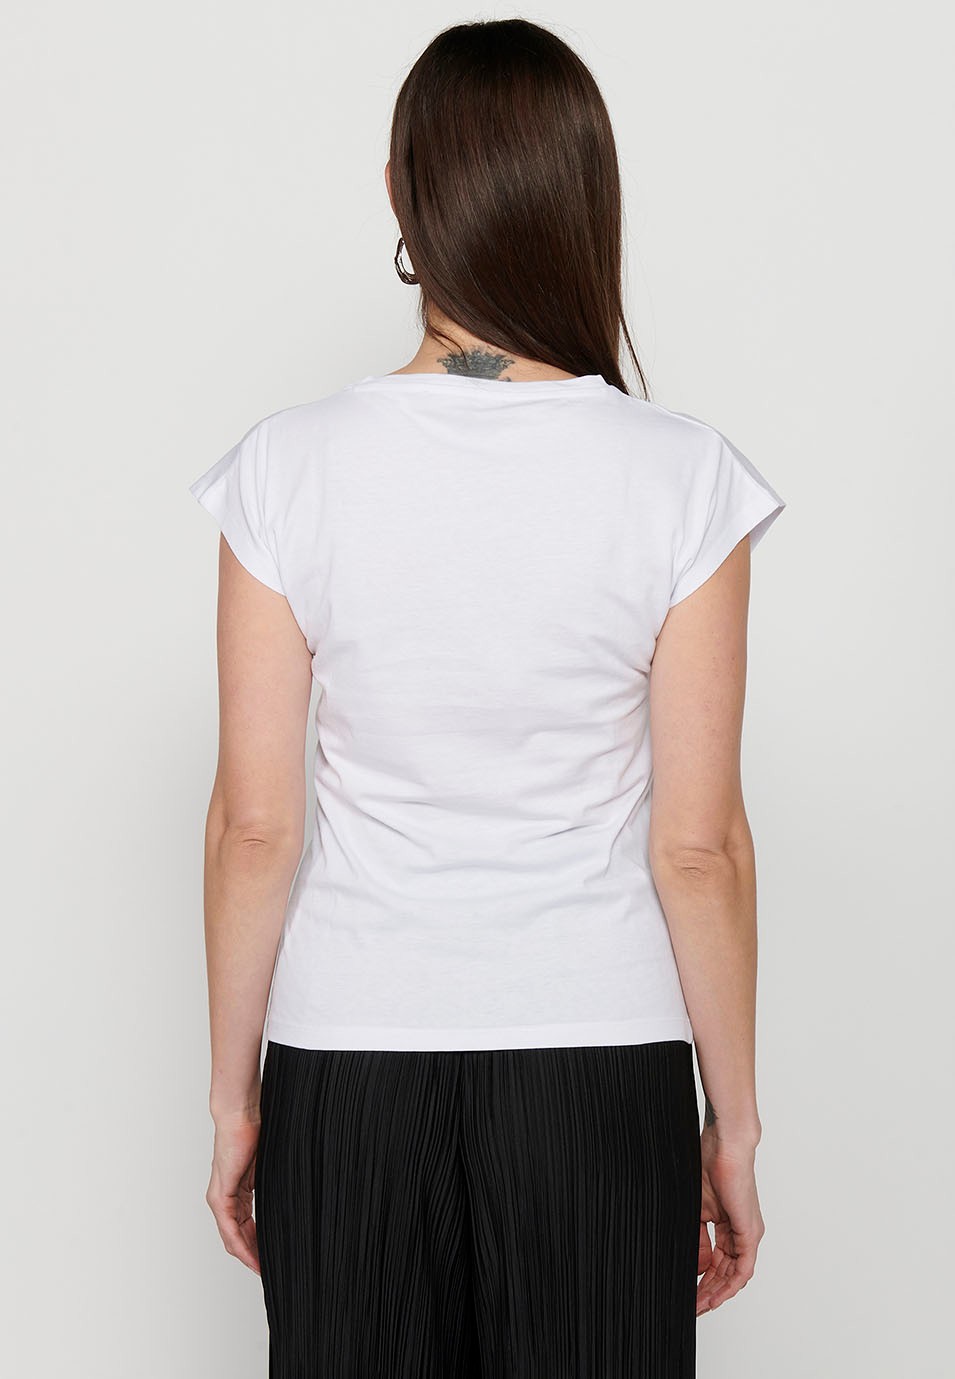 Samarreta de màniga curta amb Coll rodó i Estampat davanter color Blanc per a Dona